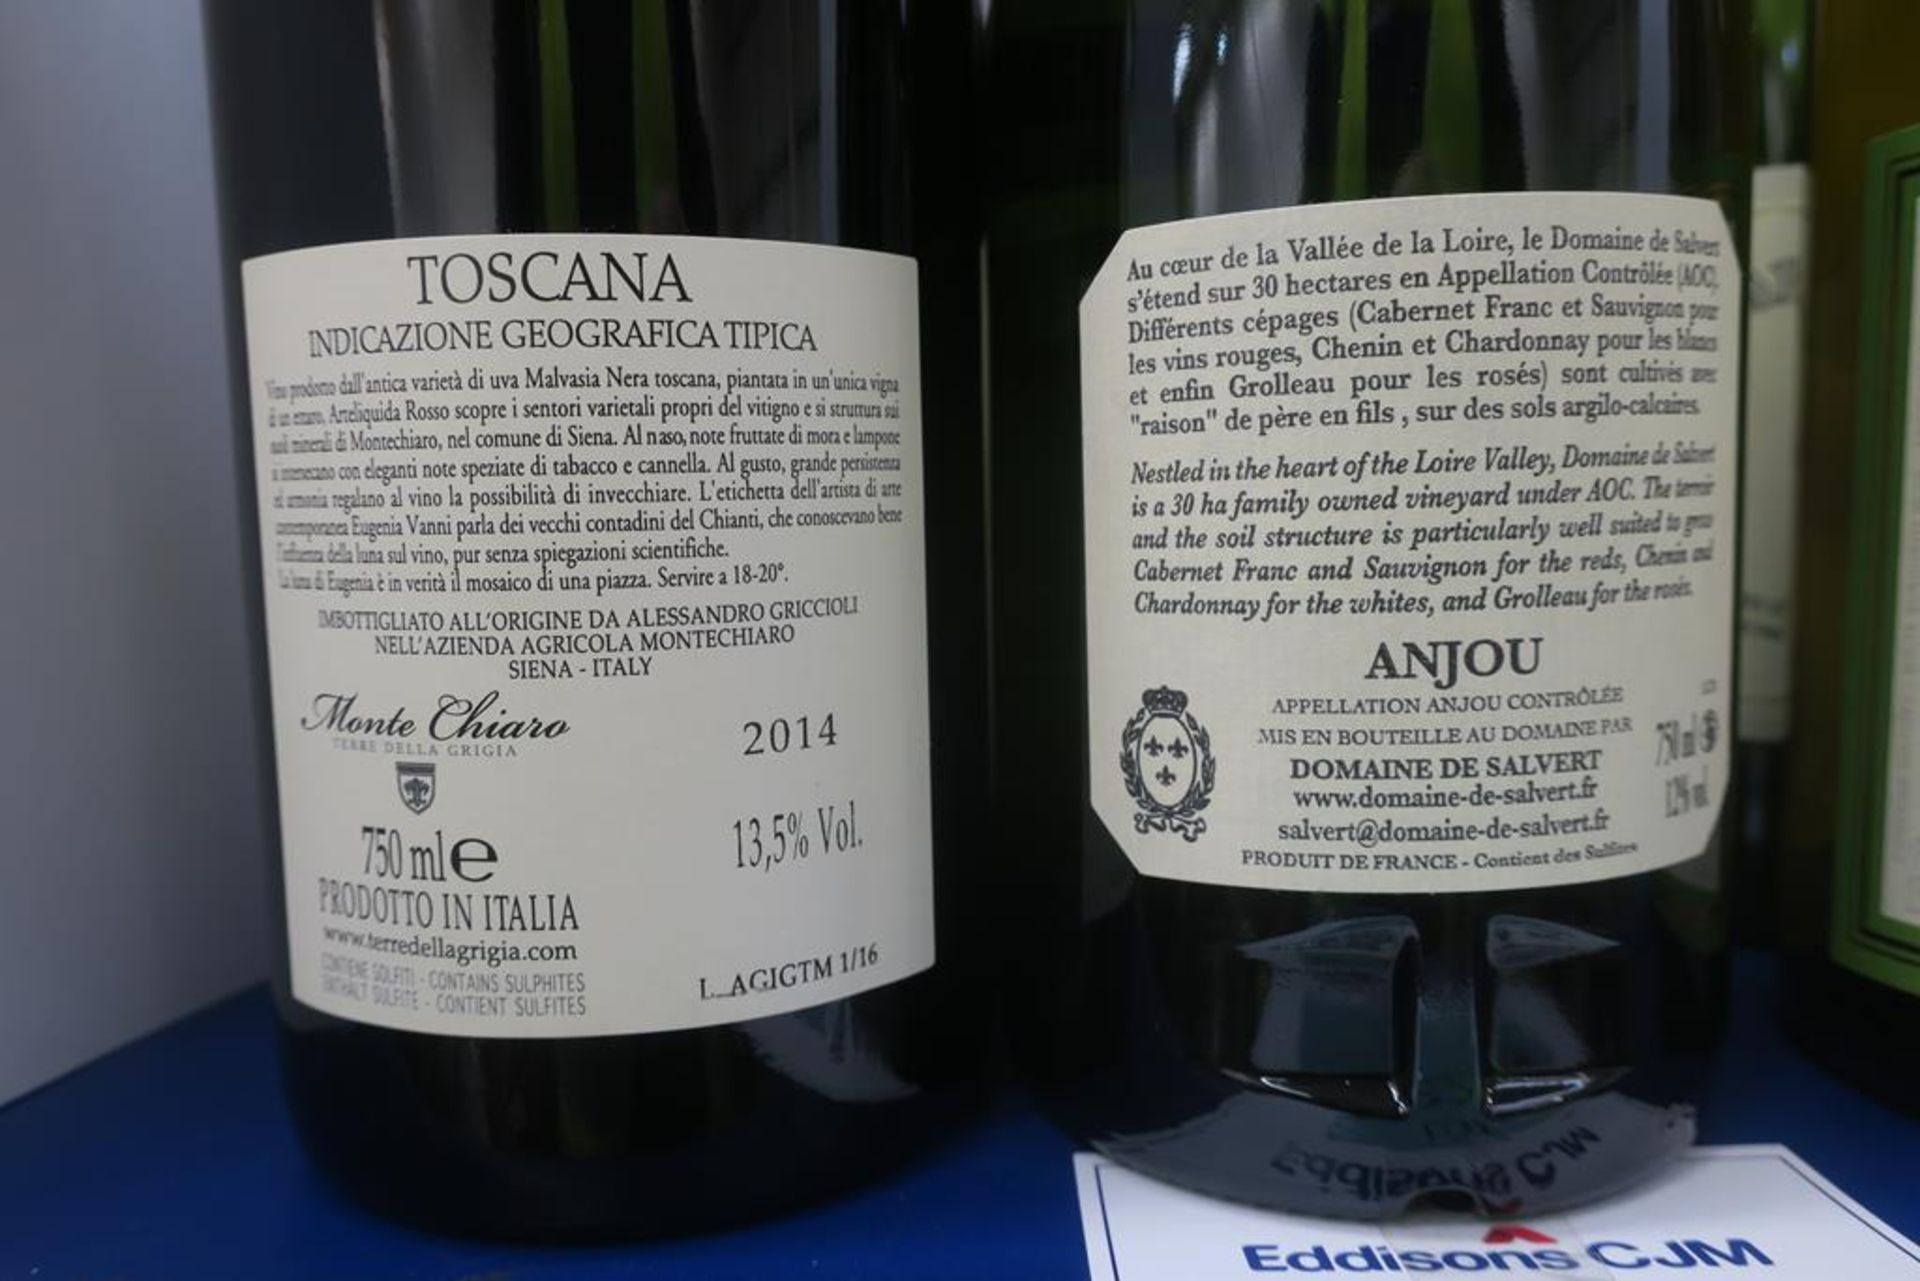 Domaine De Salvert White Wine, Desertaux Ferrand White Wine and Monte Chiaro Artelquida Red Wine - Image 3 of 3